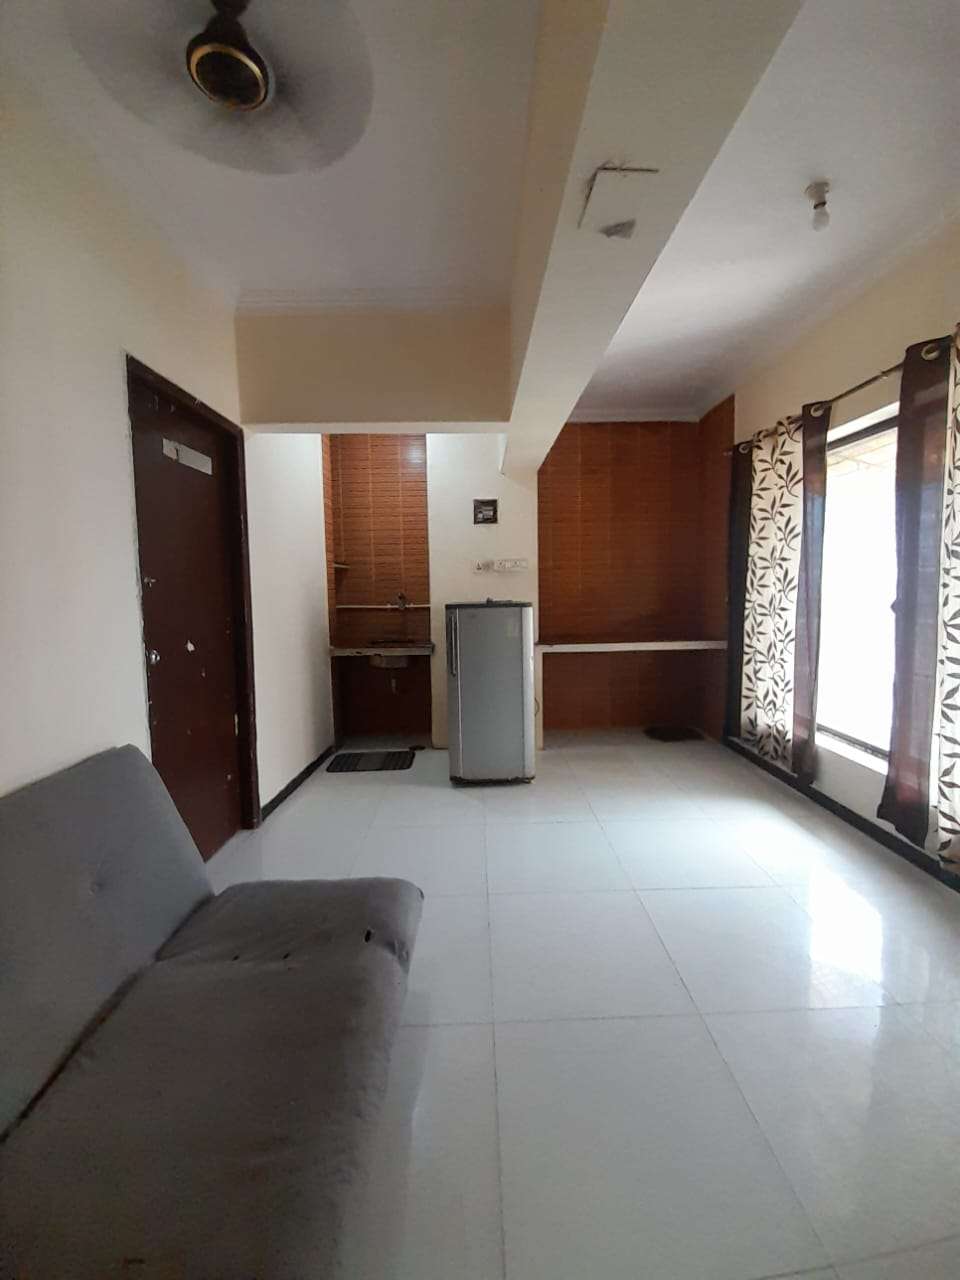 Studio Apartment For Rent in Borivali East Mumbai 6030844